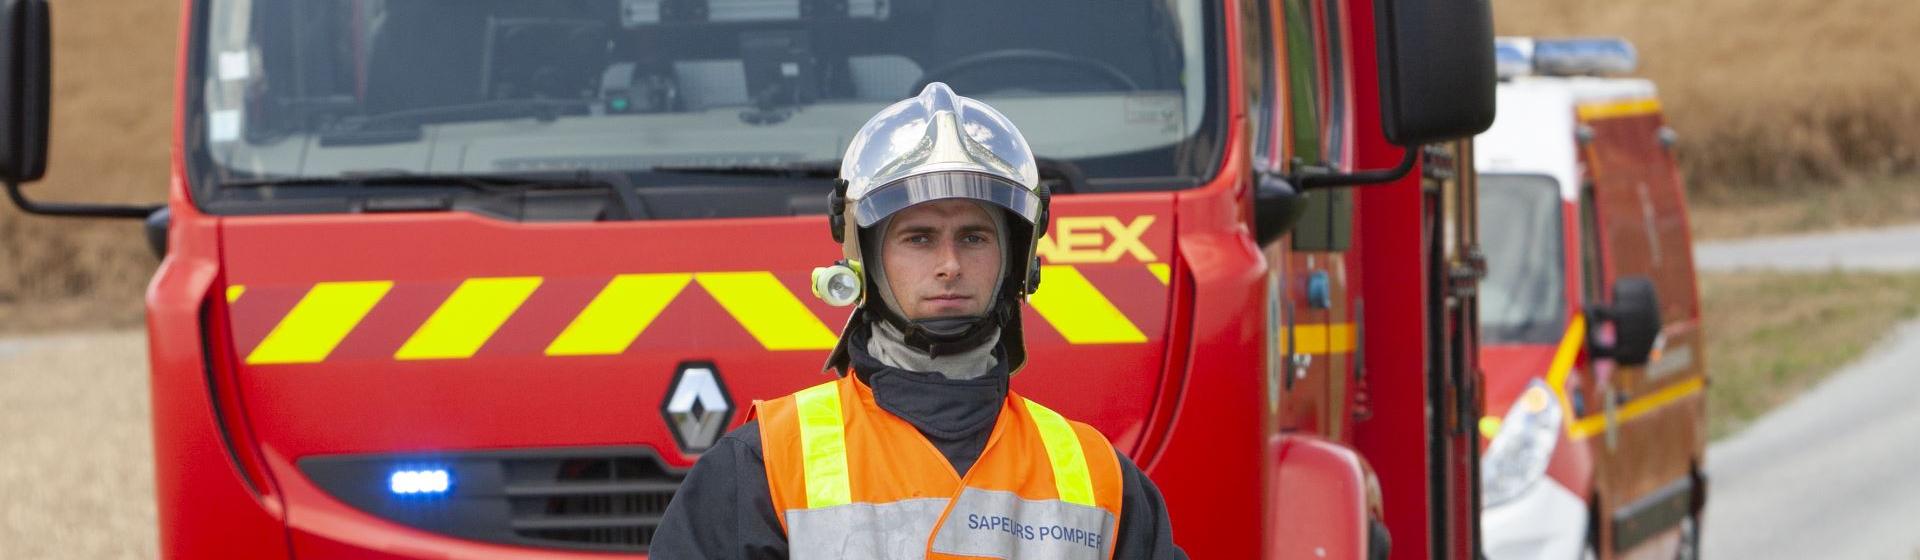 Sapeur-pompier d'un service départemental d’incendie et de secours (SDIS)